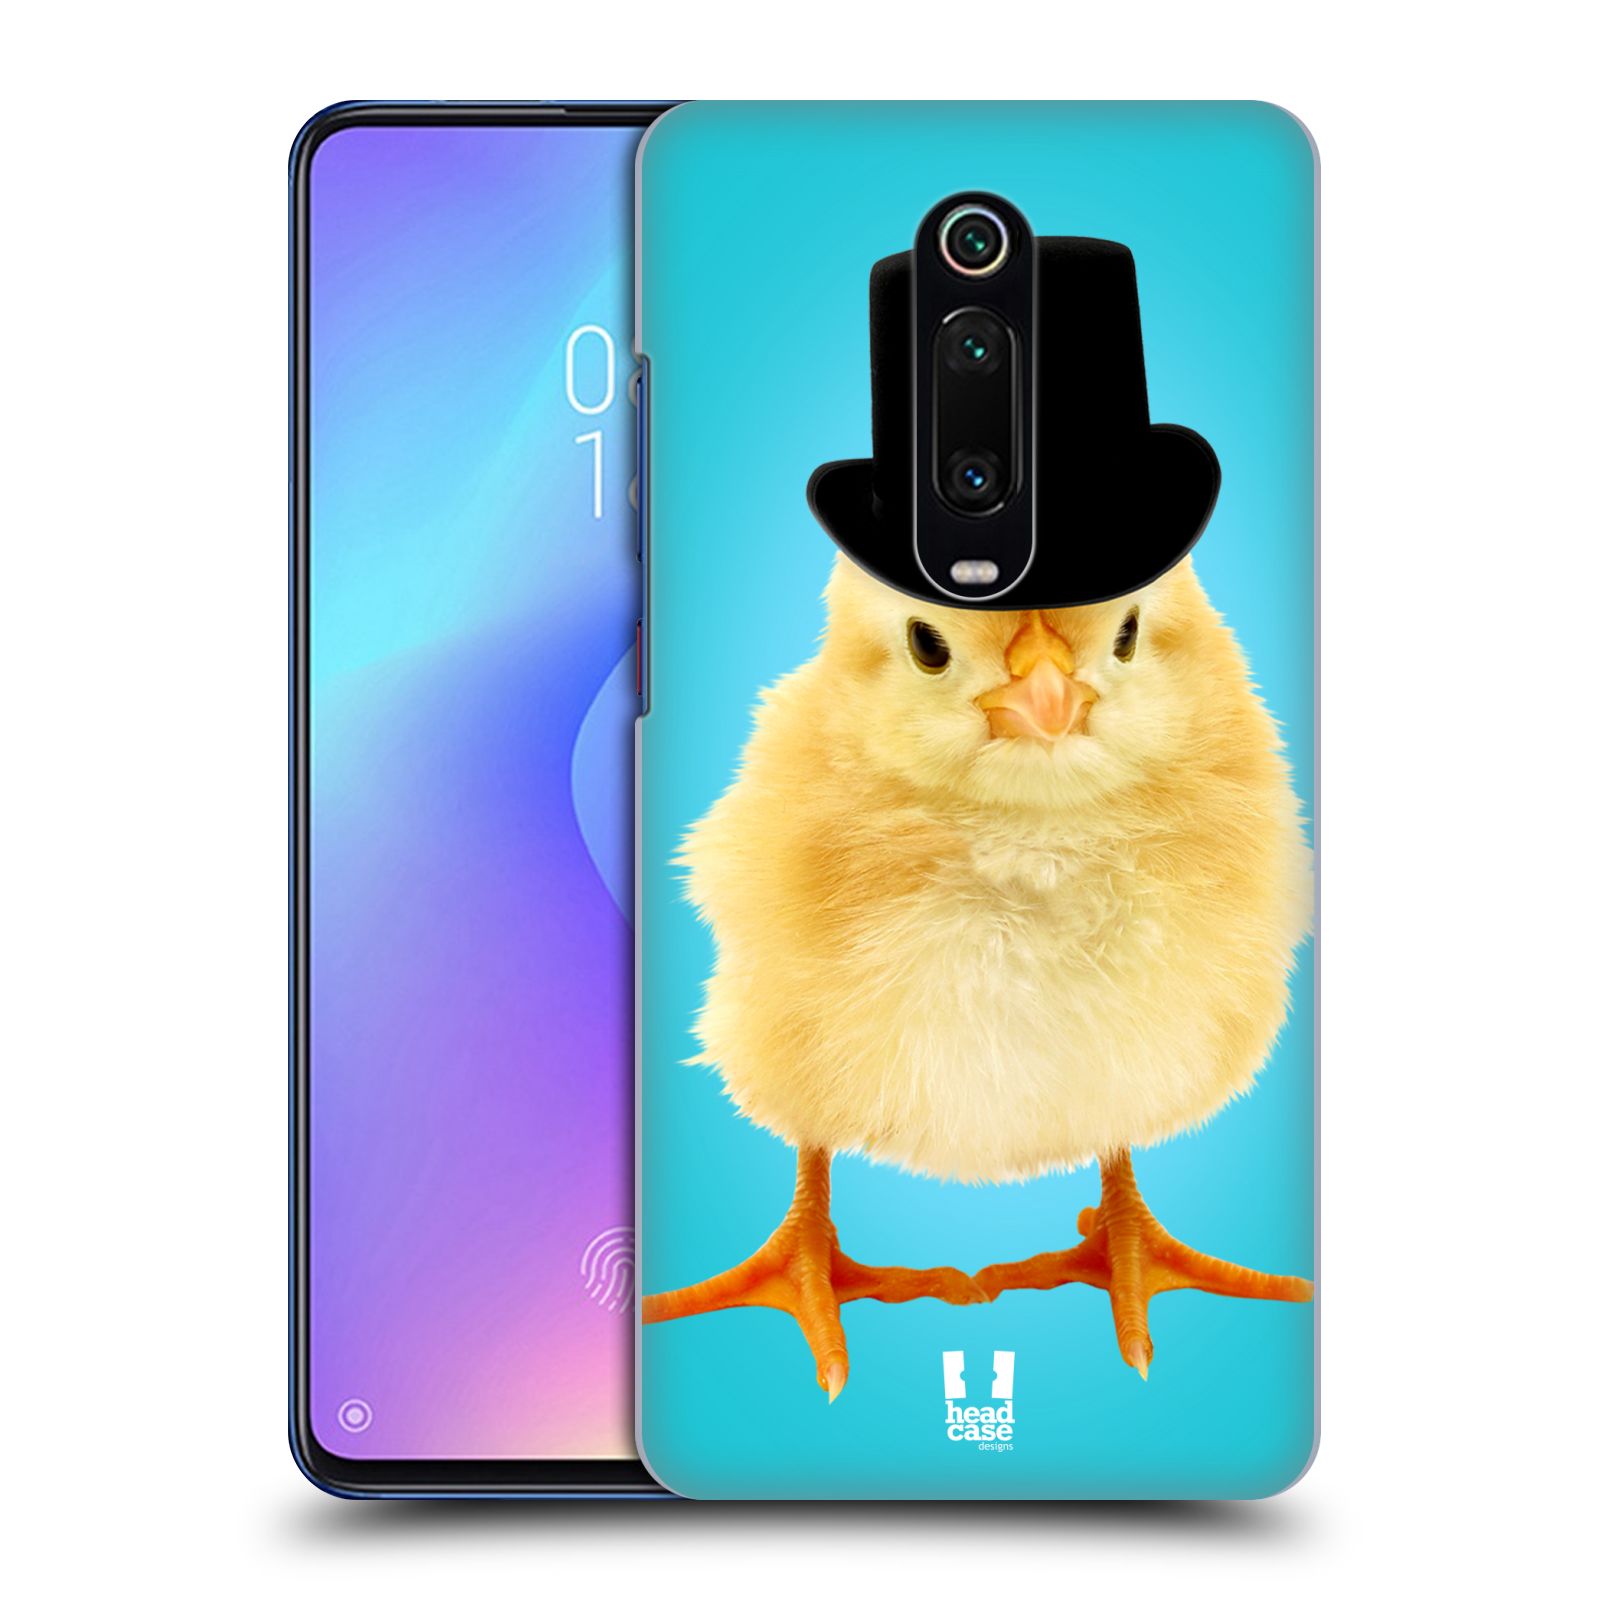 Pouzdro na mobil Xiaomi Mi 9T PRO - HEAD CASE - vzor Legrační zvířátka Mr. kuřátko